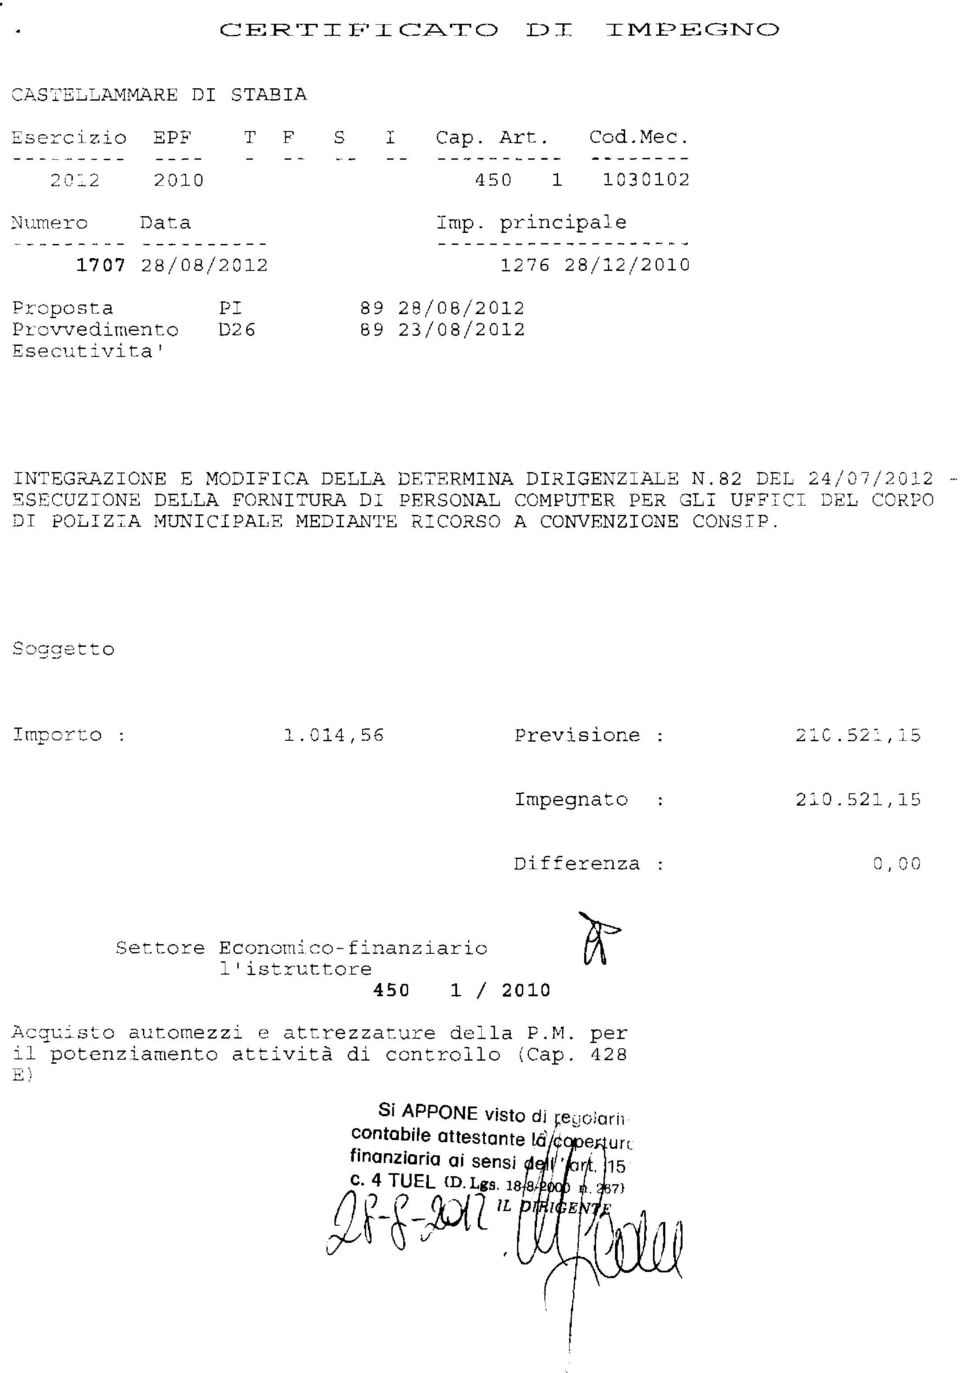 82 DEL 24/07/2012 - ESECUZIONE DELLA FORNITURA DI PERSONAL COMPUTER PER GLI UFFICI DEL CORPO DI POLIZ:A MUNICIPALE MEDik~TE RICORSO A CONVENZIONE CONSIP. Soggetto Importo 1.